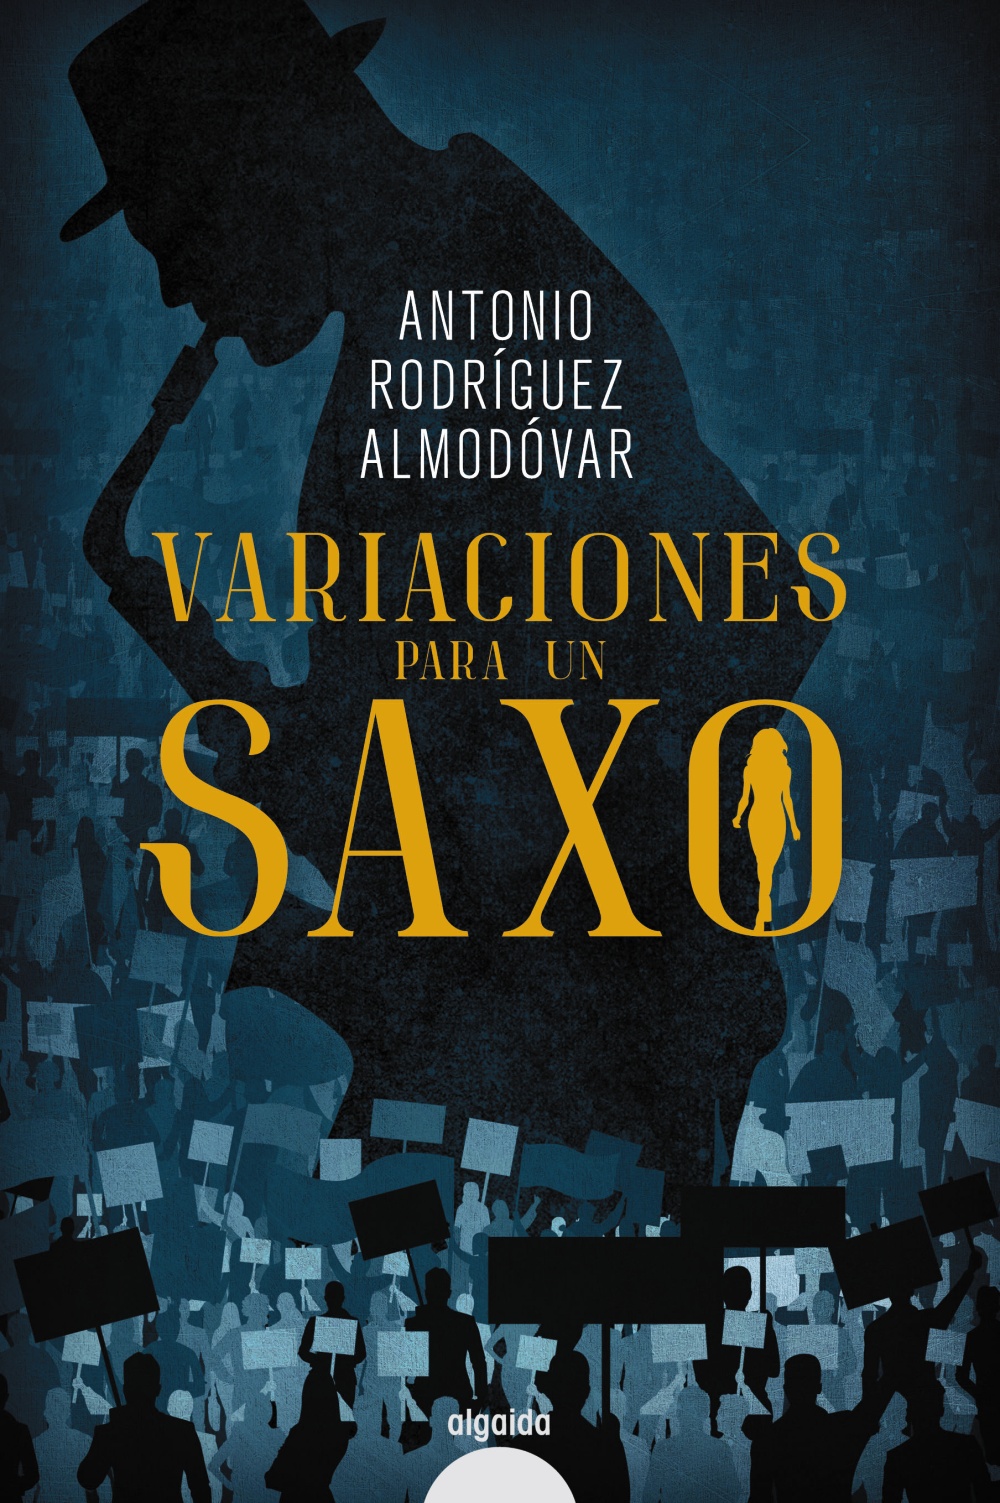 Antonio Rodríguez Almodóvar publica Variaciones para un saxo